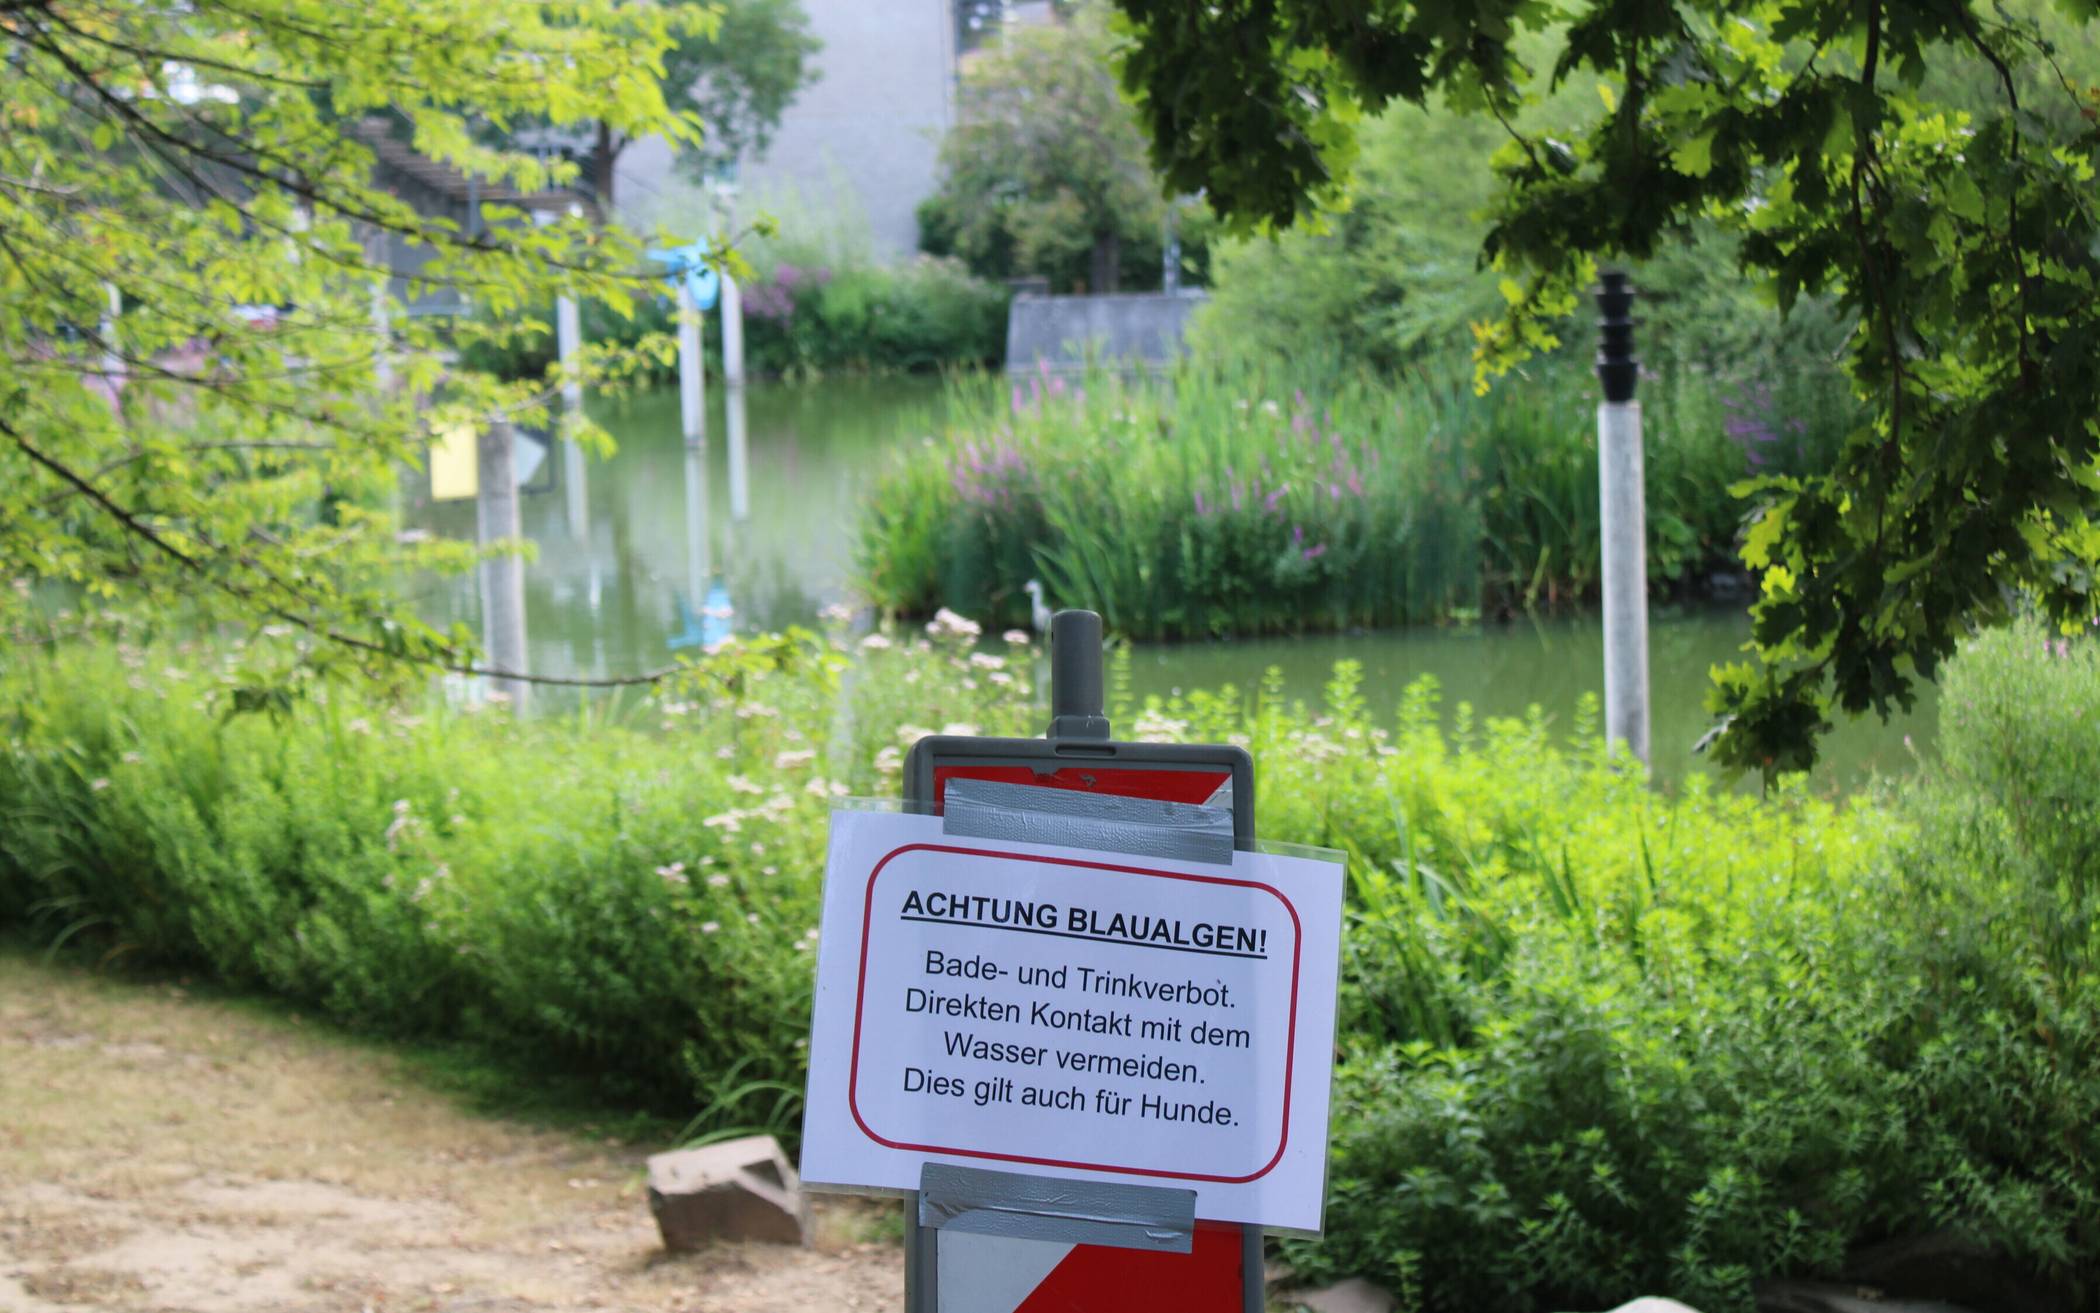  „Achtung Blaualgen!“ Rund um den Stadtparksee hat die Stadtverwaltung Hinweisschilder aufgestellt. Wie die Algenplage beseitigt werden kann, wird zurzeit untersucht. 